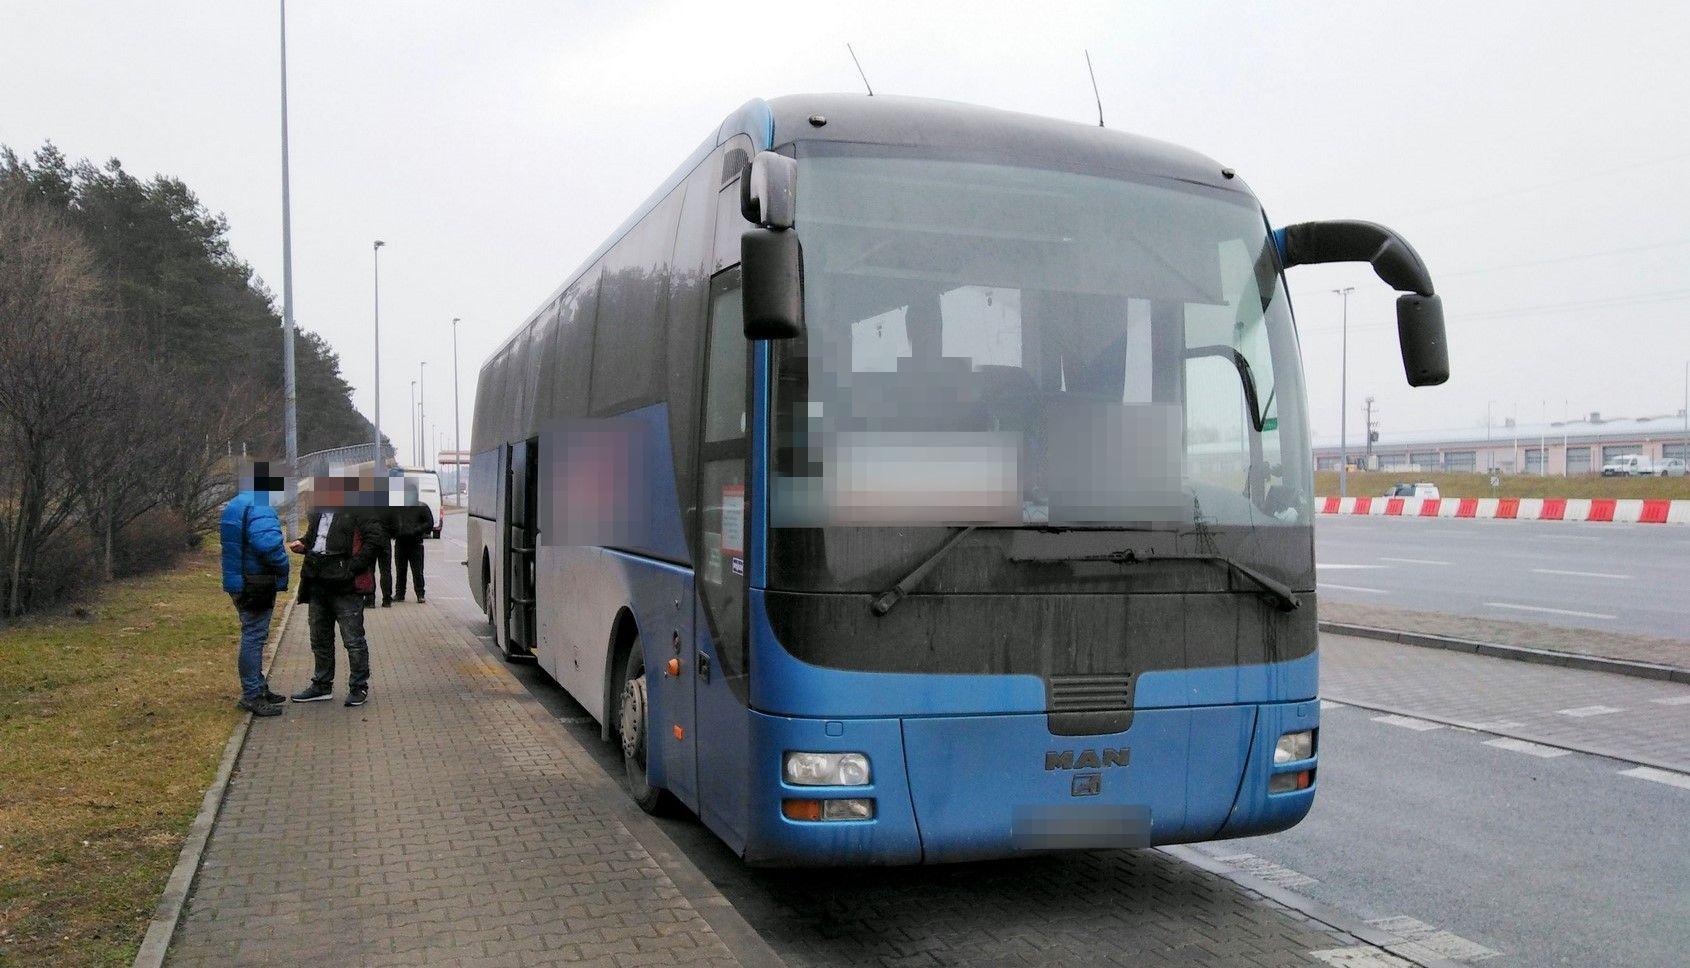 Ukraińskim autobusem przewożono za dużo pasażerów.